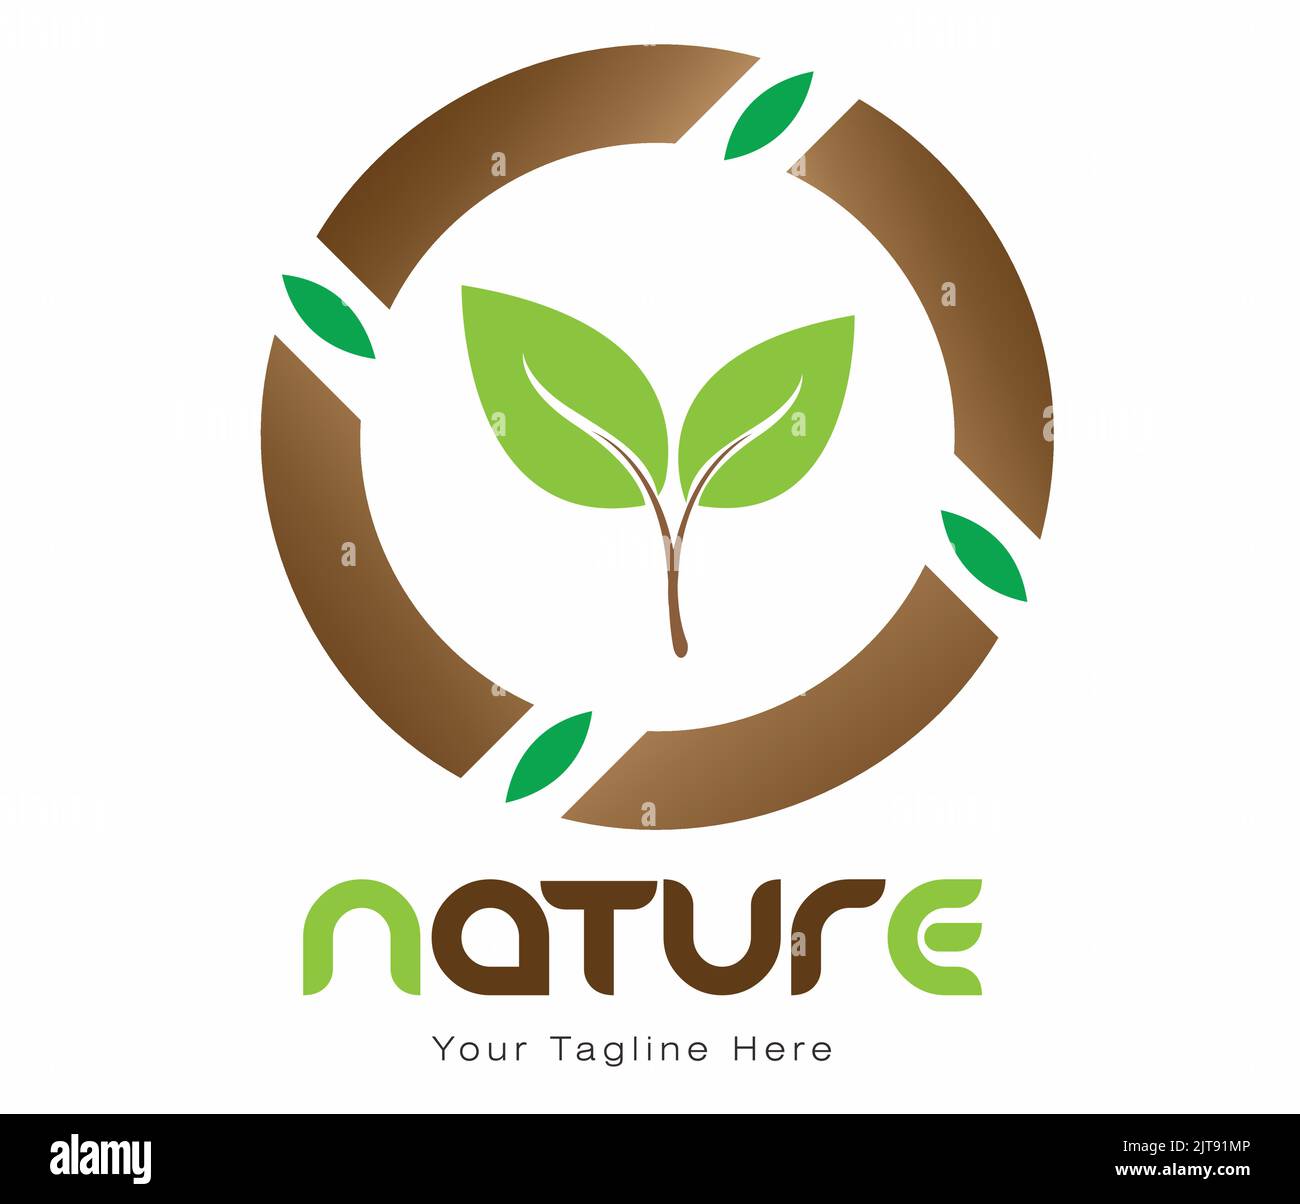 natura logo agricoltura biologico alimentare logo eco verde con foglia coltivazione fattoria logo vettore illustrazione di sano naturale verde vegies logo templ Illustrazione Vettoriale